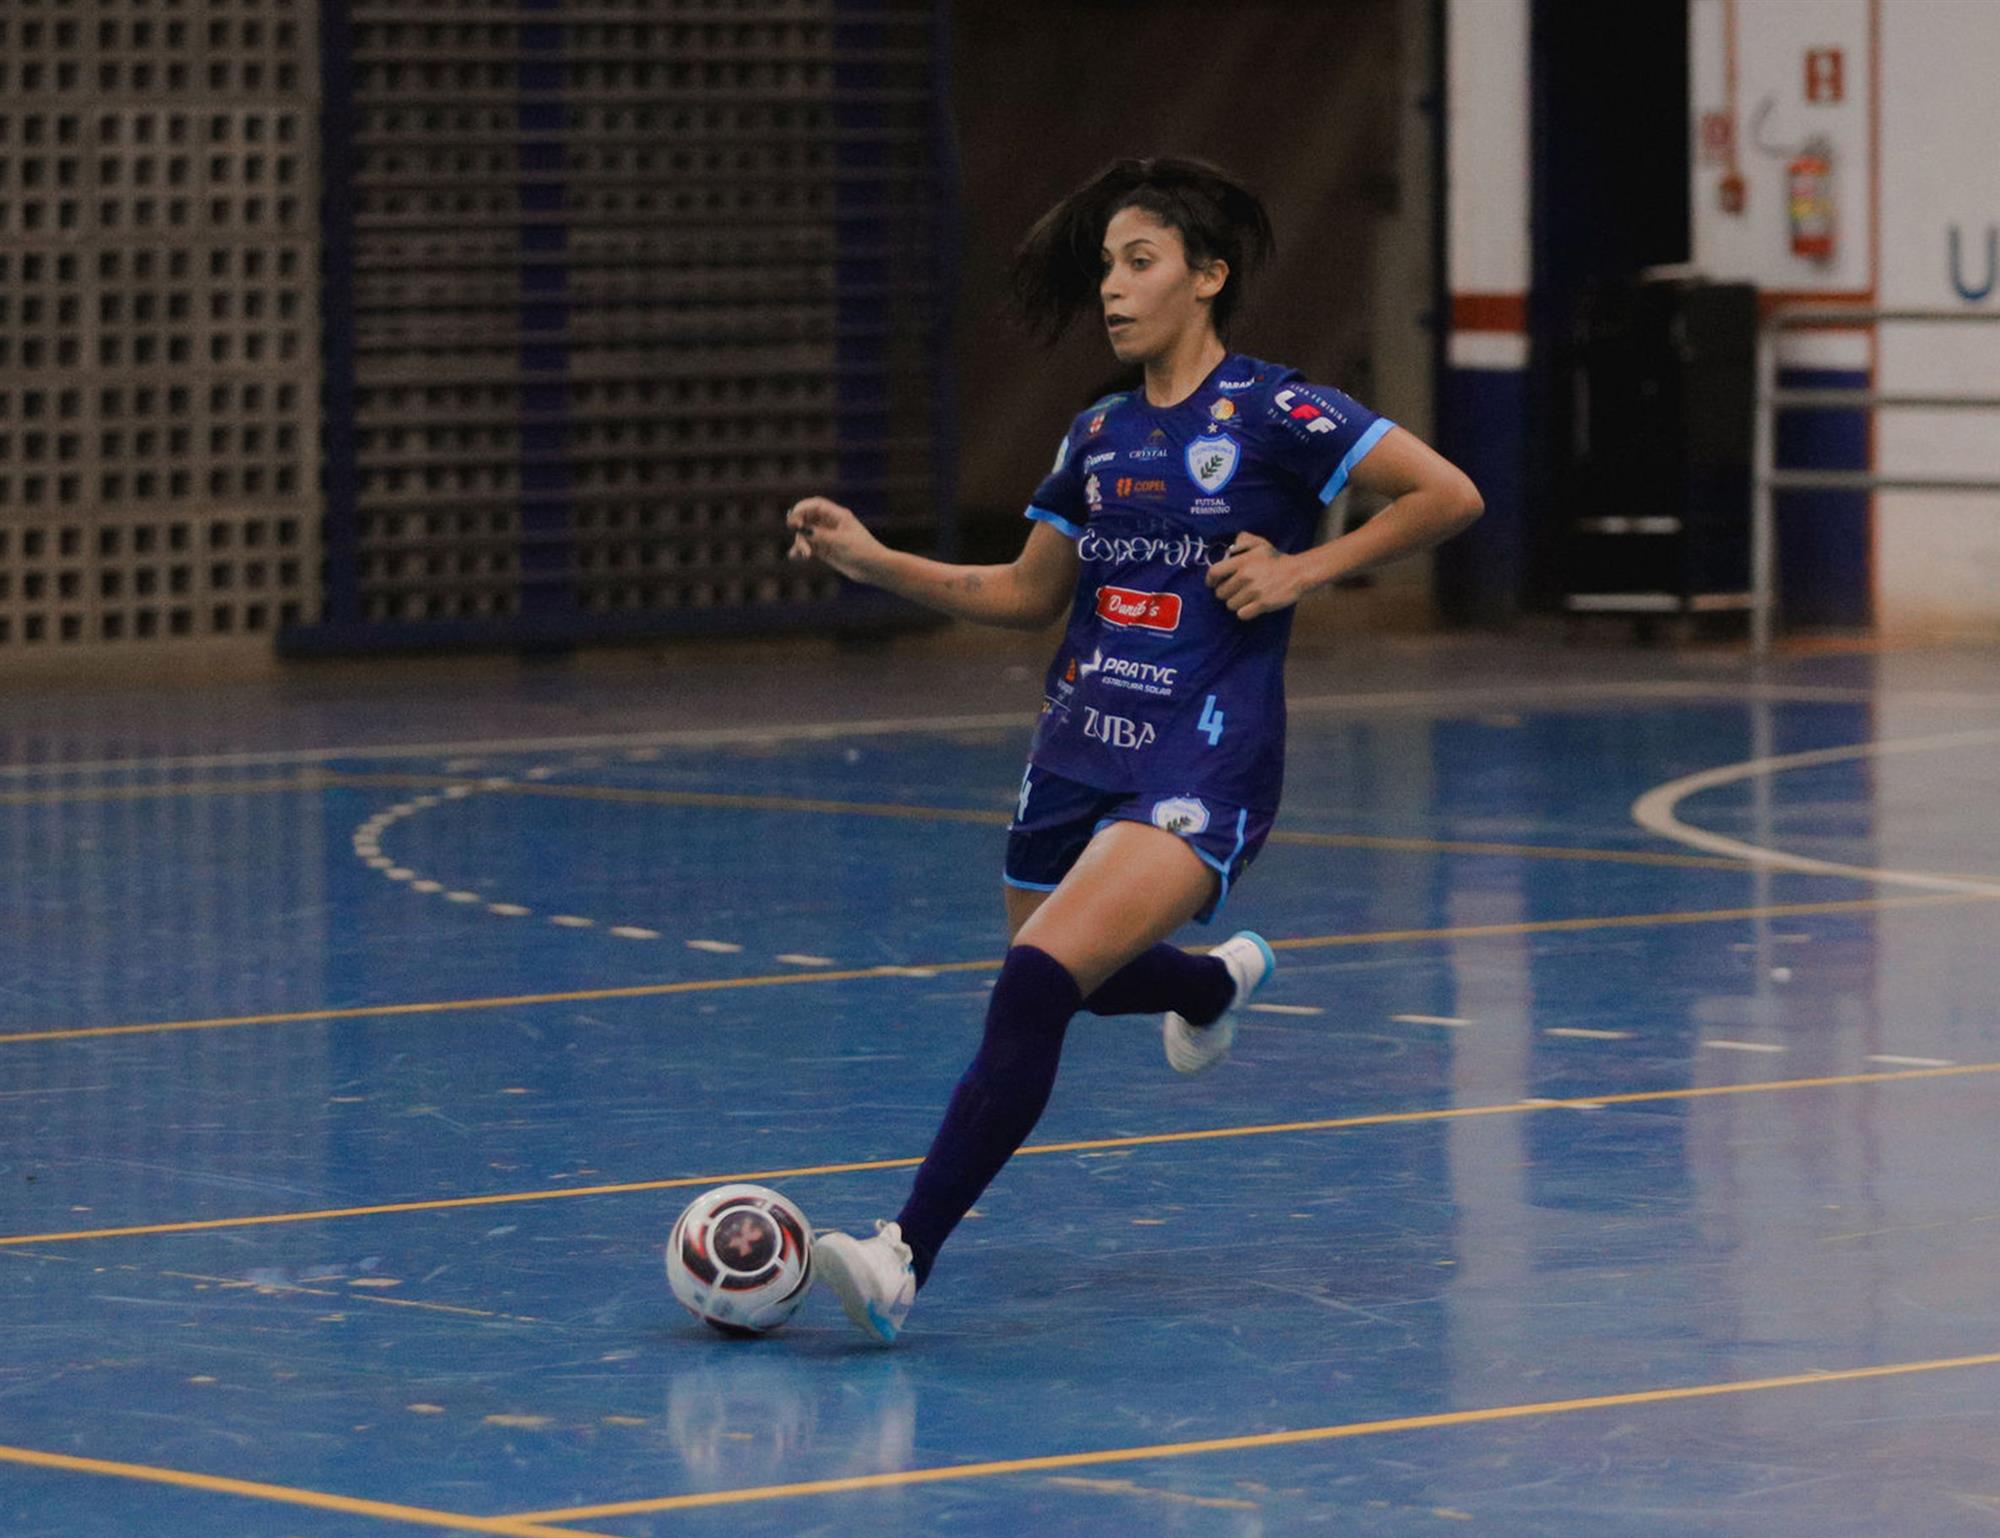 SESA - Futsal e vôlei femininos da Sesa fazem bonito no final de